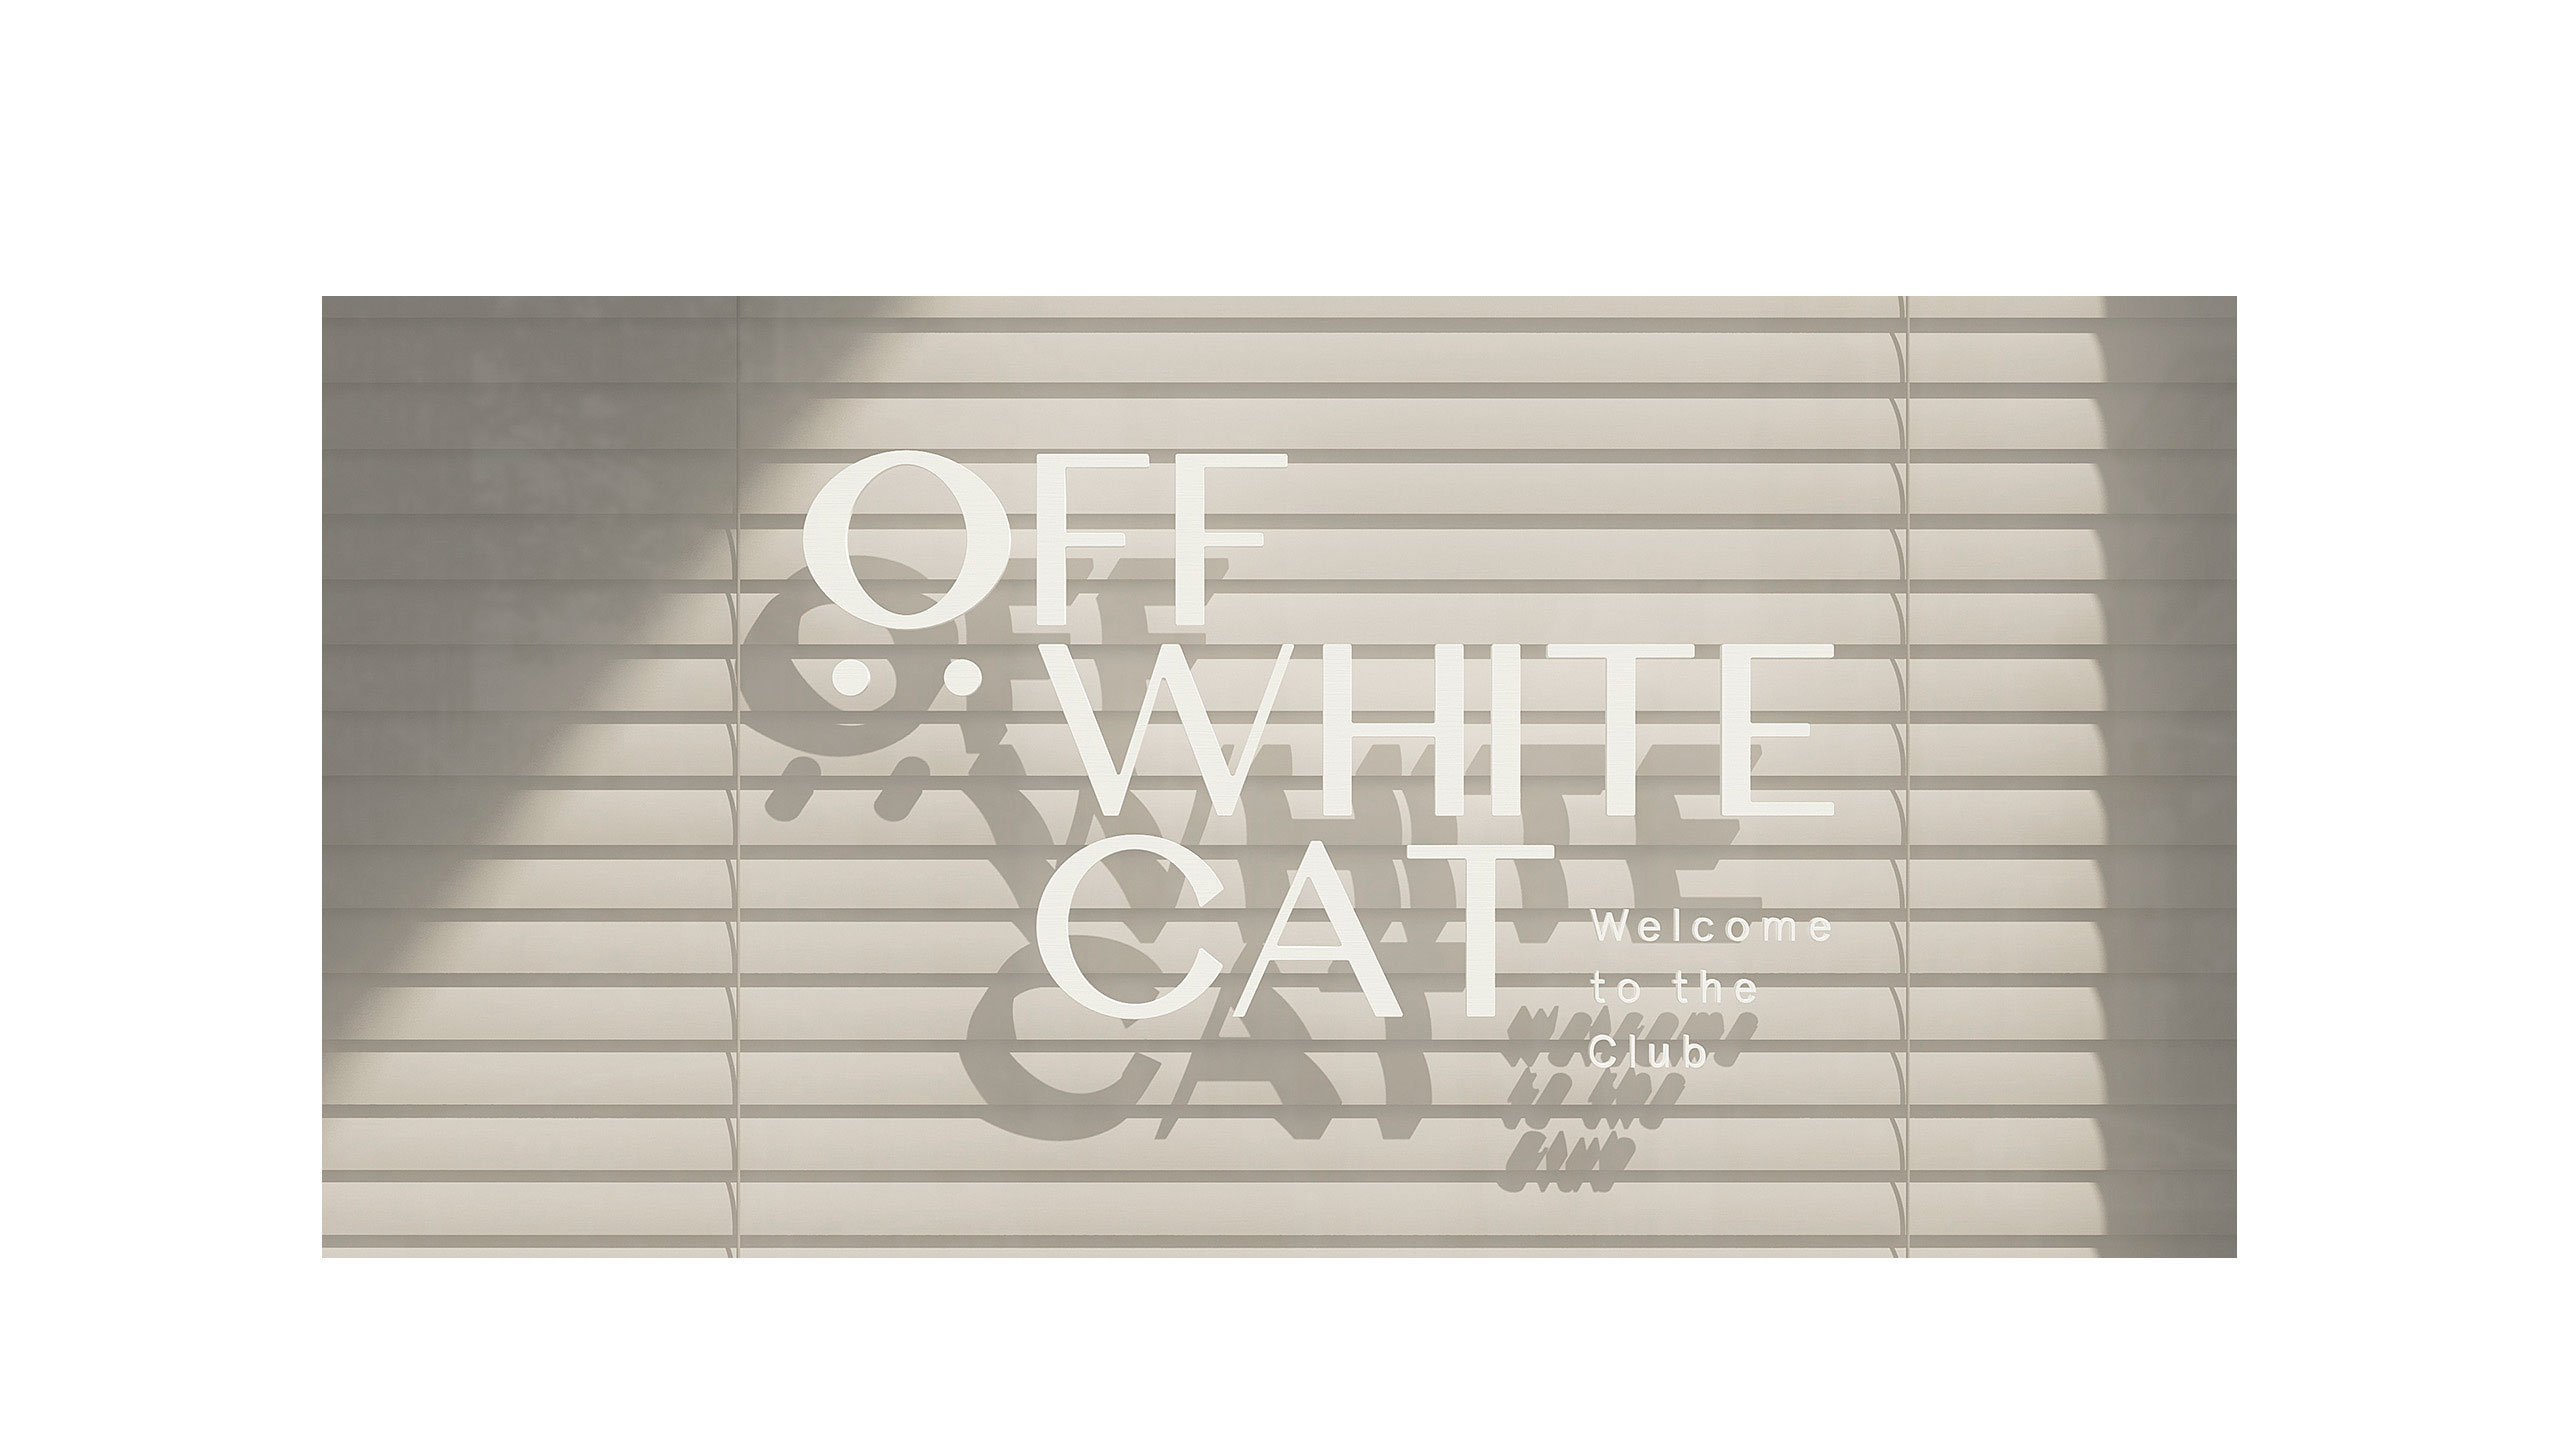 estudio de design carpintaria para Off White Cat imagem campanha